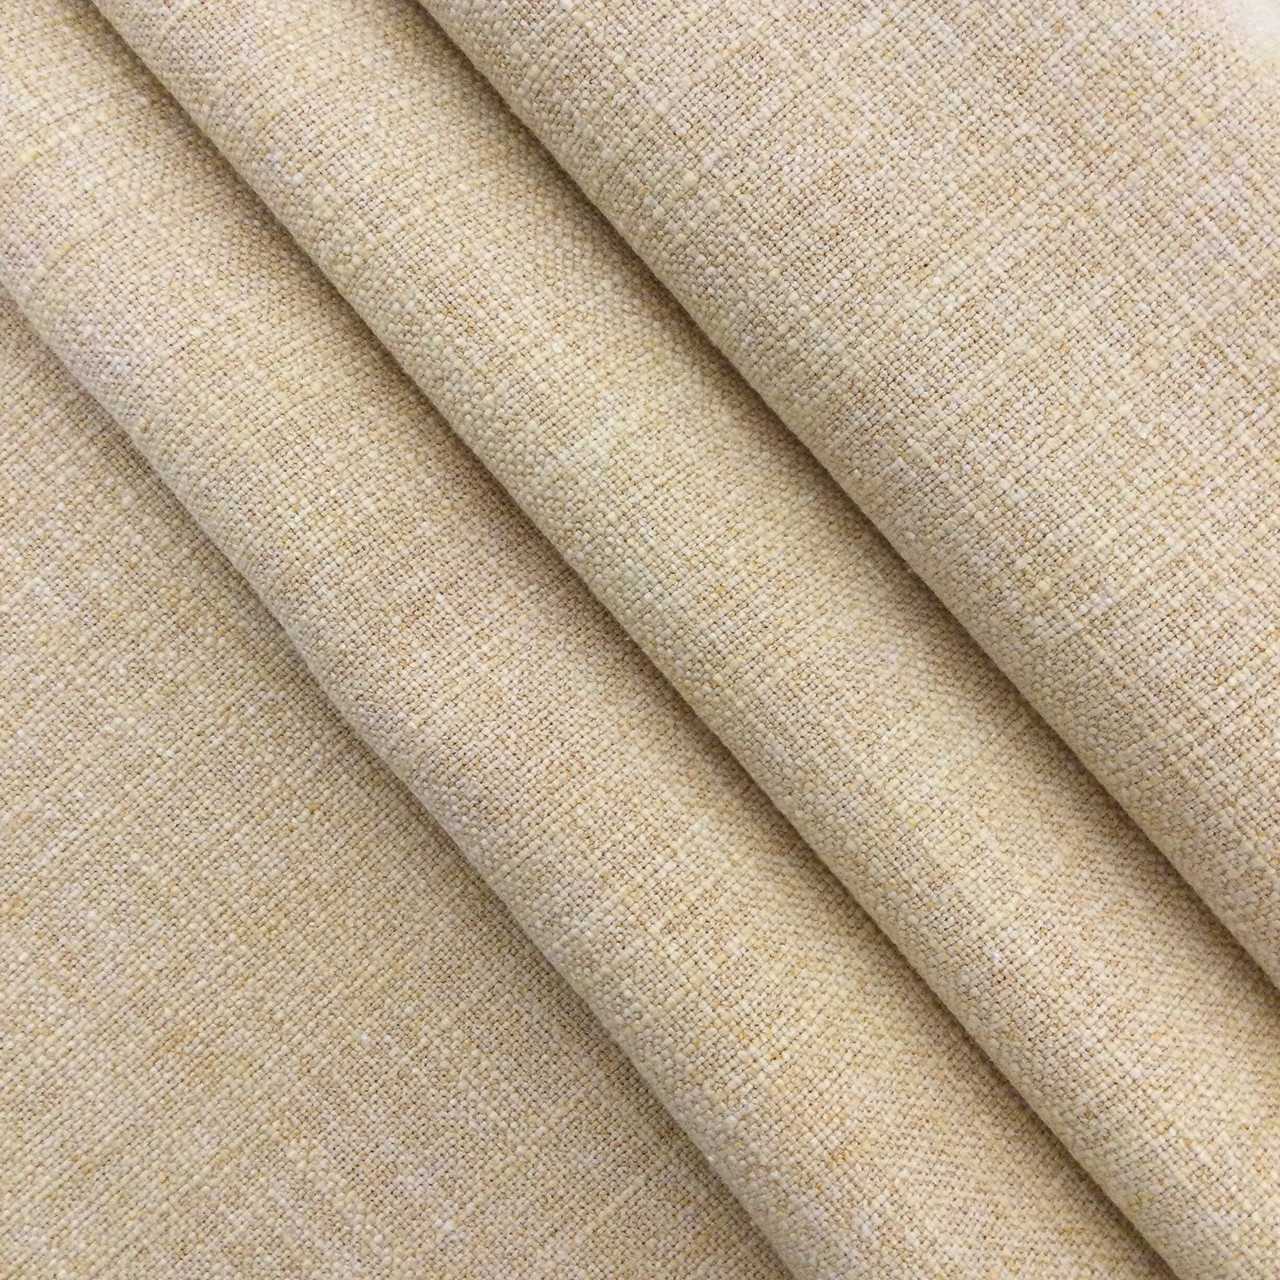 Plain Cotton Blend Fabric-2657919